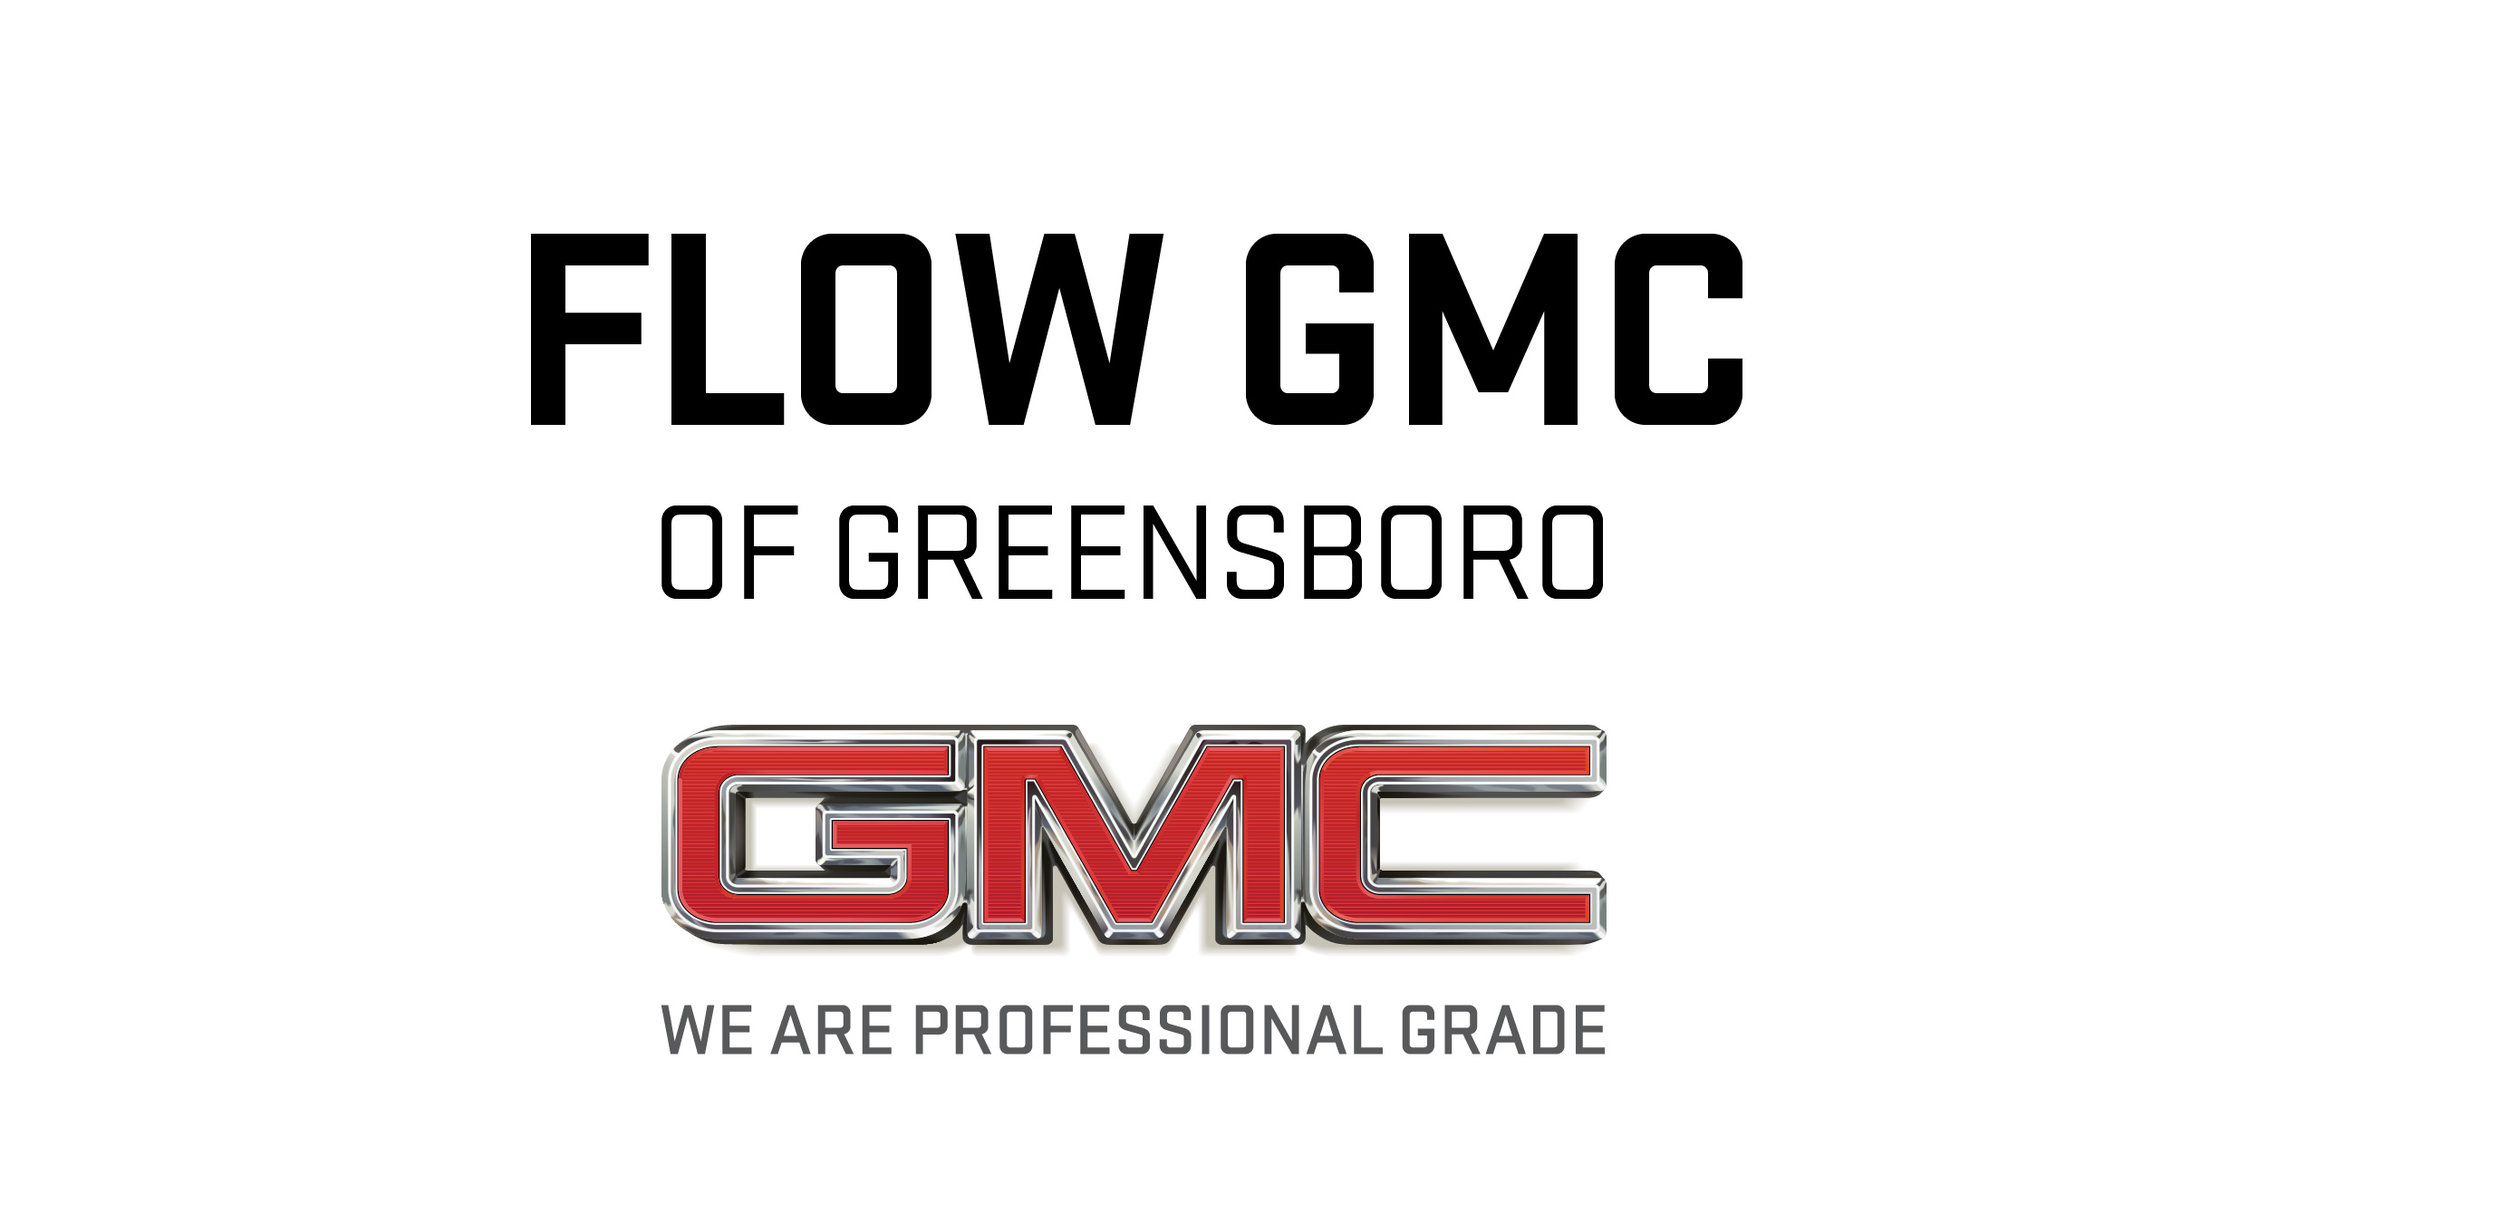 FlowGMC-GSO-logo-2017-2.jpg